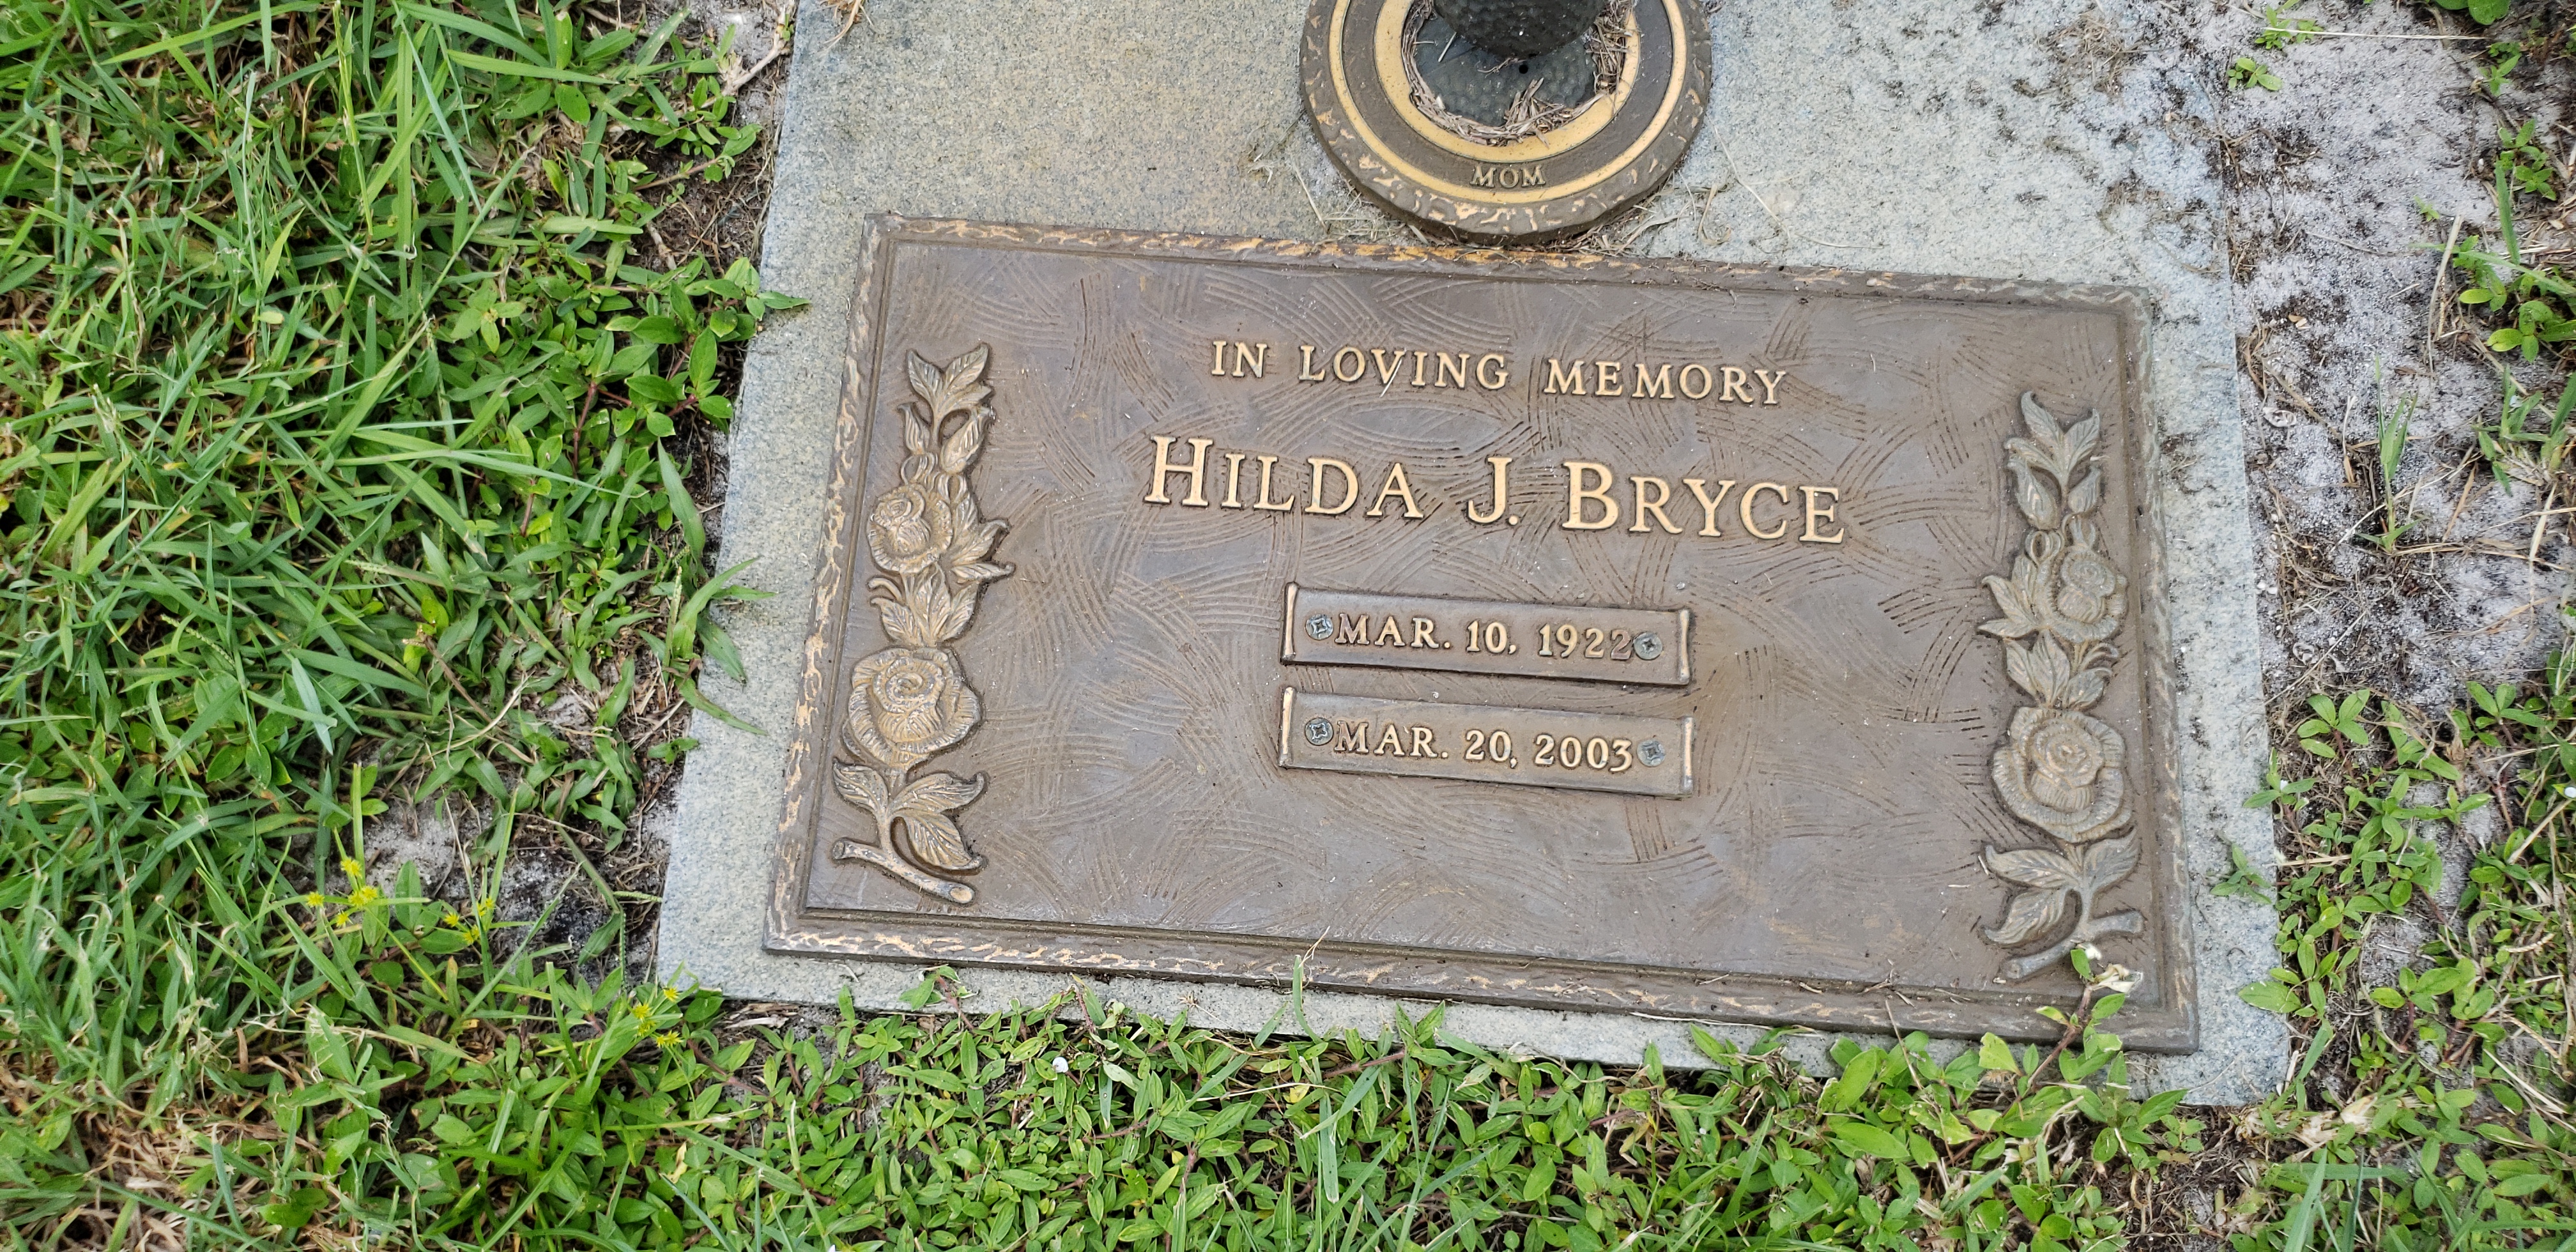 Hilda J Bryce